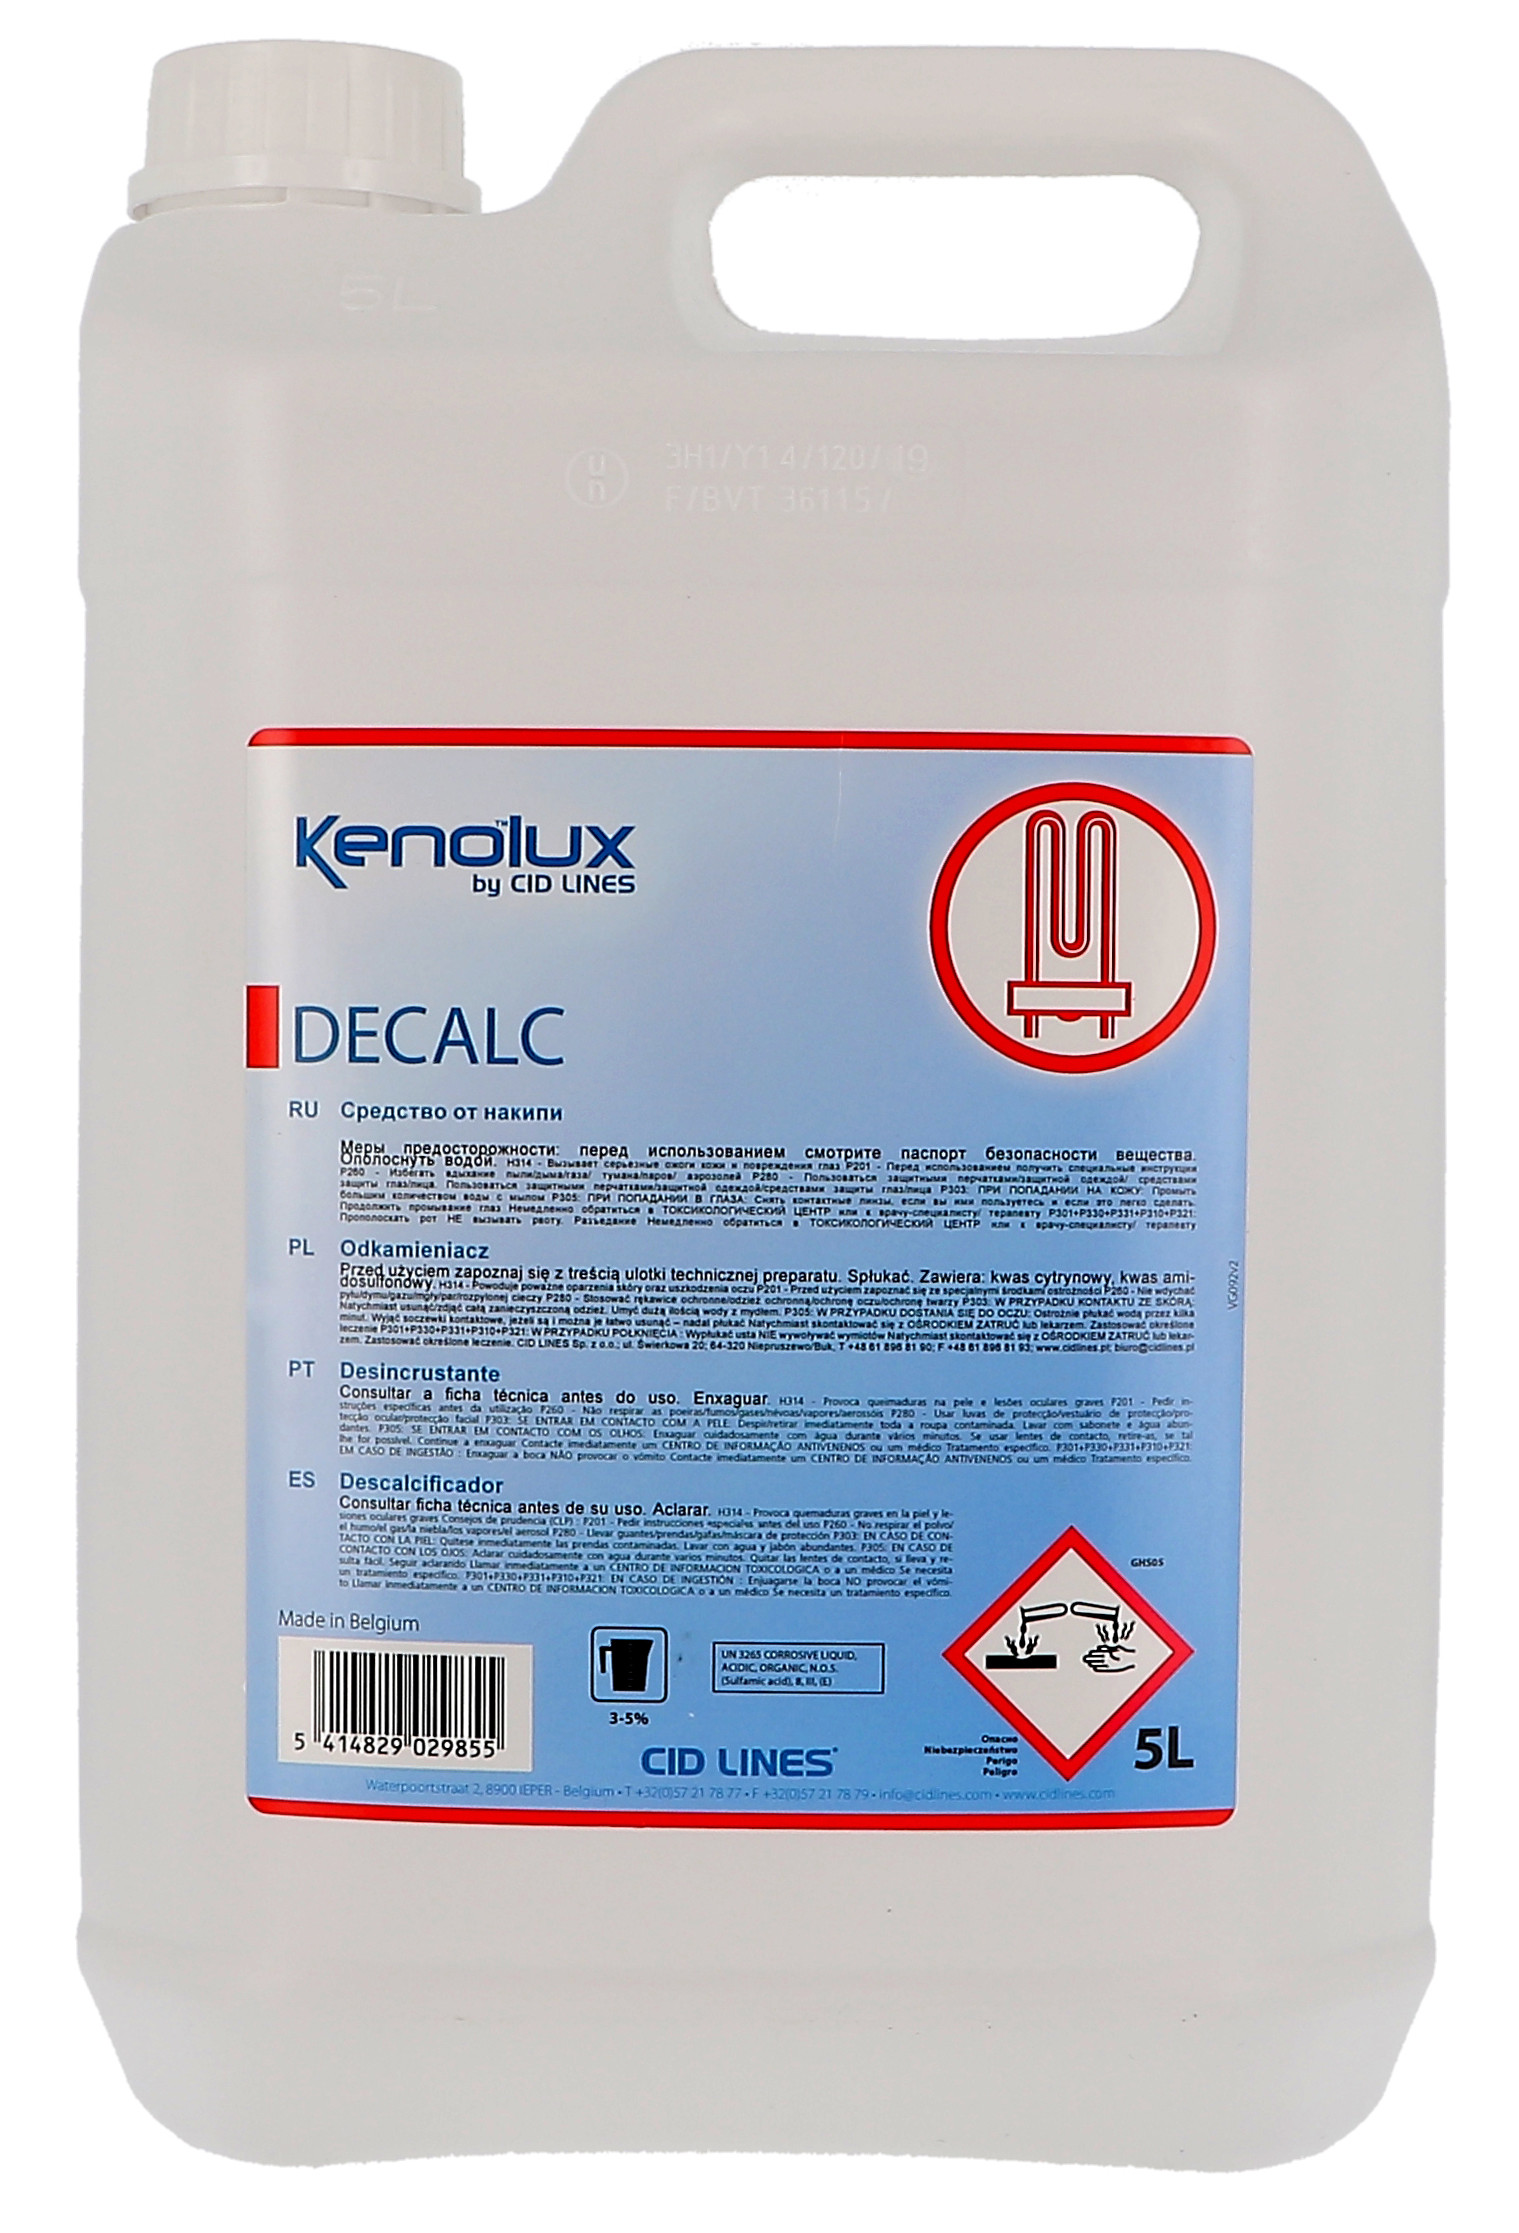 Kenolux Decalc 5L CID Lines détartrant 